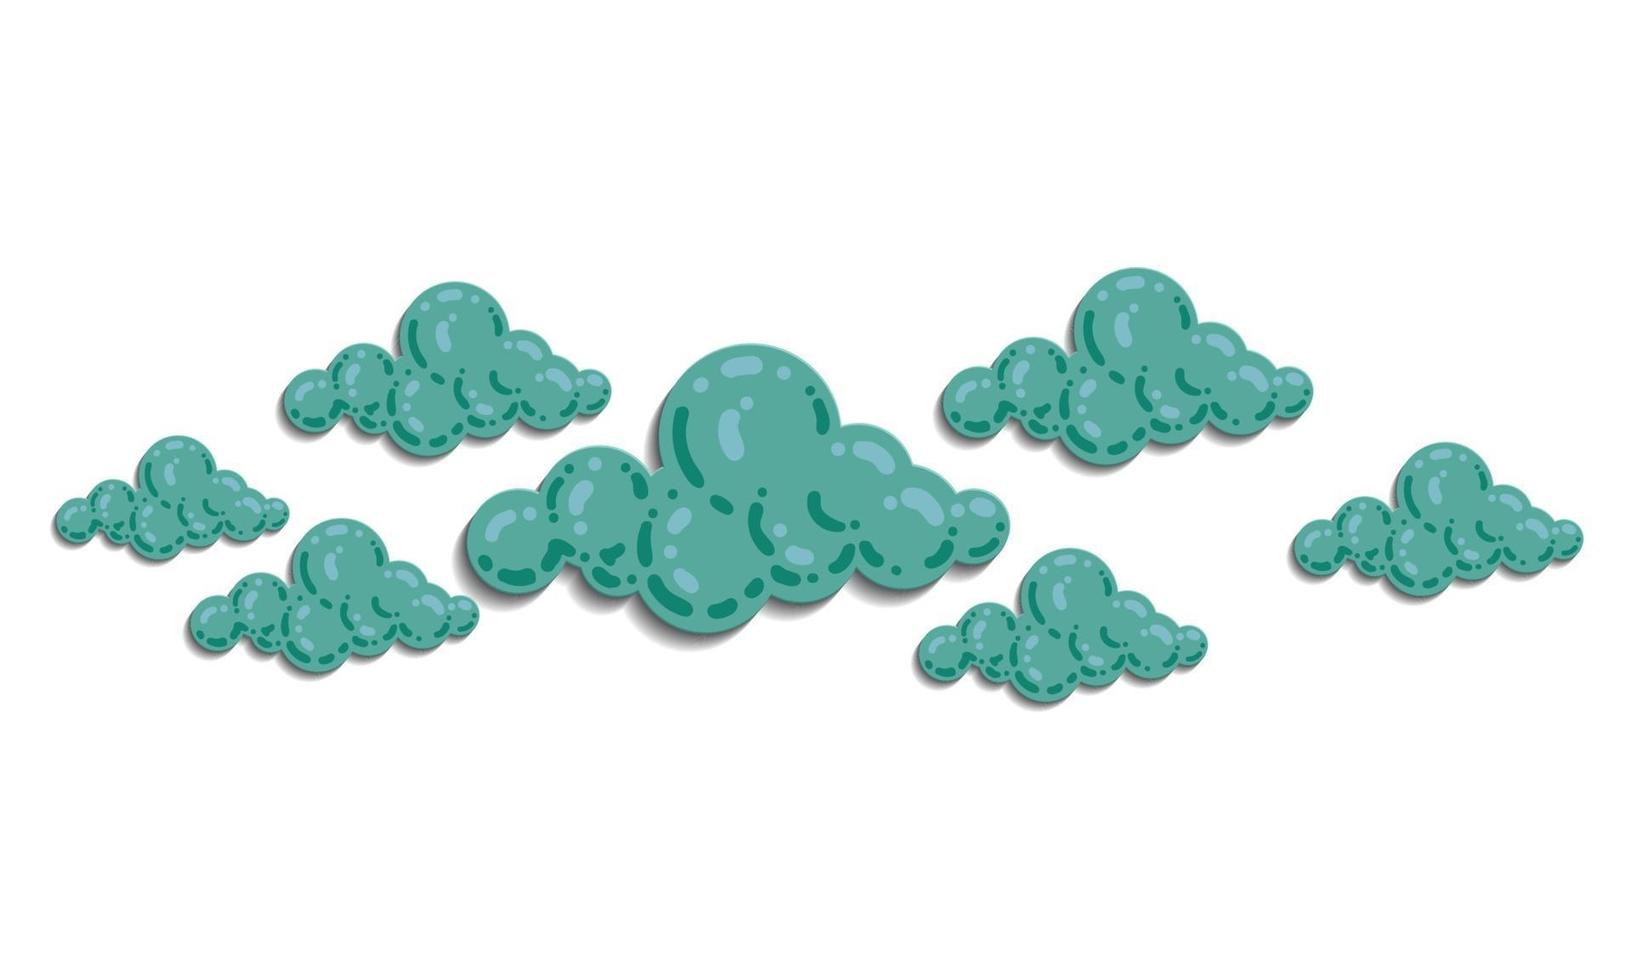 nuage avec vecteur d'illustration de ciel. couleur pastel et dégradé. modèle d'illustration minimale pour carte, site Web, enfant de papier peint, arrière-plan et impression.